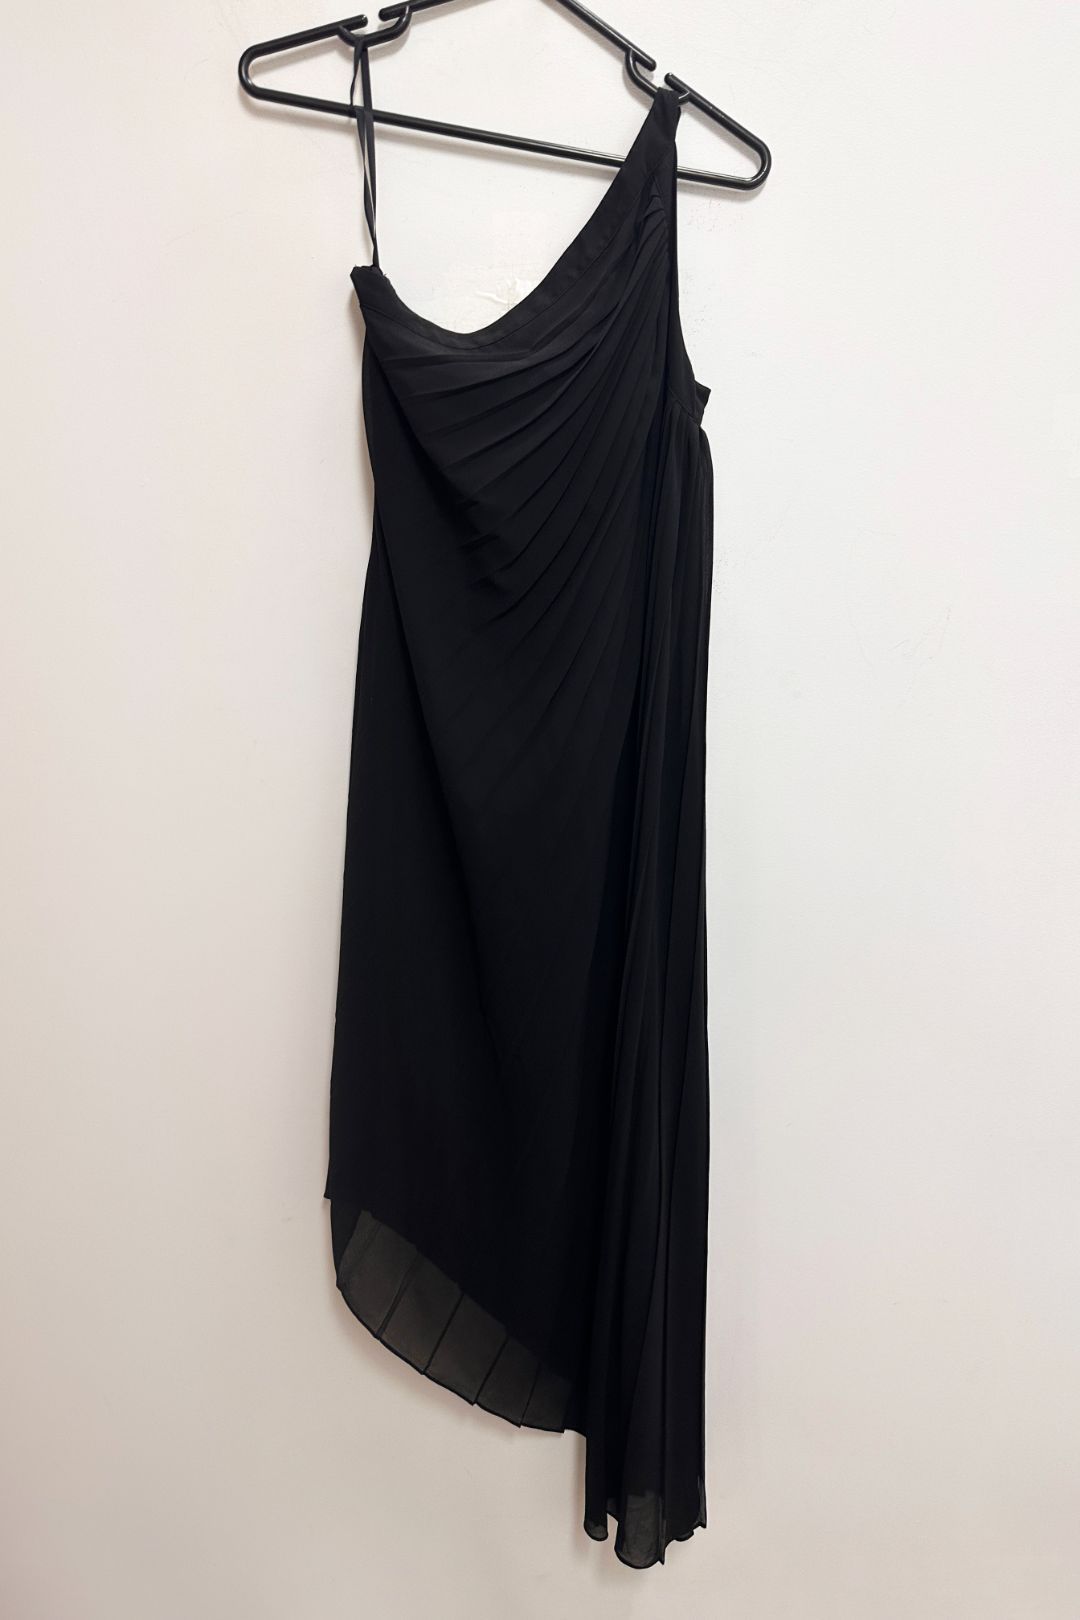 Howard Showers Off Shoulder Evening Dress in Black